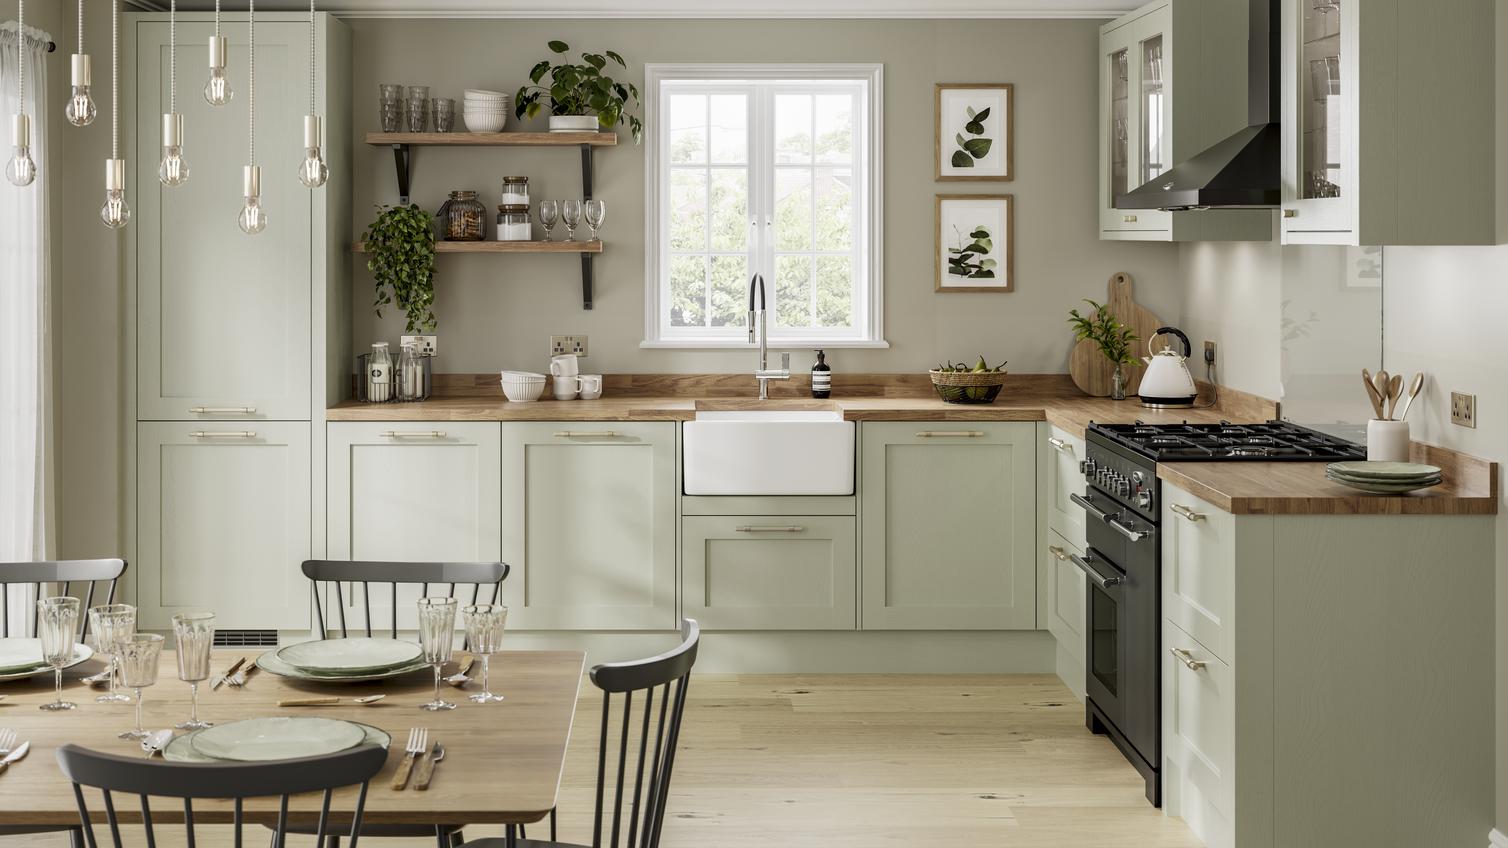 Sage green kitchen idea with shaker doors. Includes a Belfast sink, wood worktops, black extractor and black range cooker.